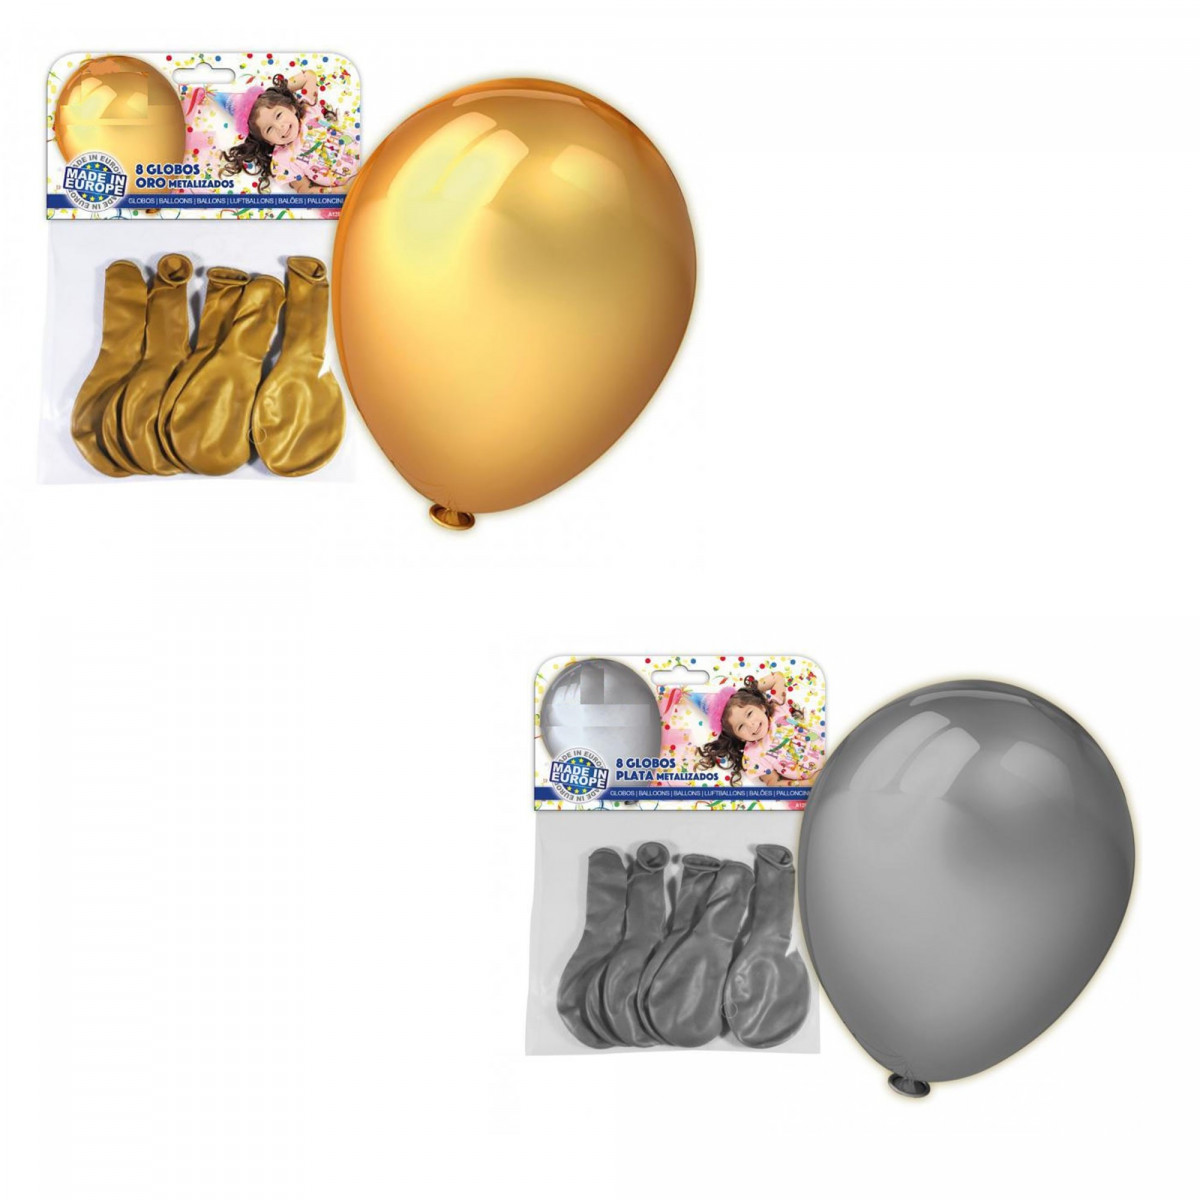 Ramo de globos de Peppa Pig personalizable con Peppa – Elige tu número de  edad – Paquete de suministros para fiestas, decoraciones de cumpleaños